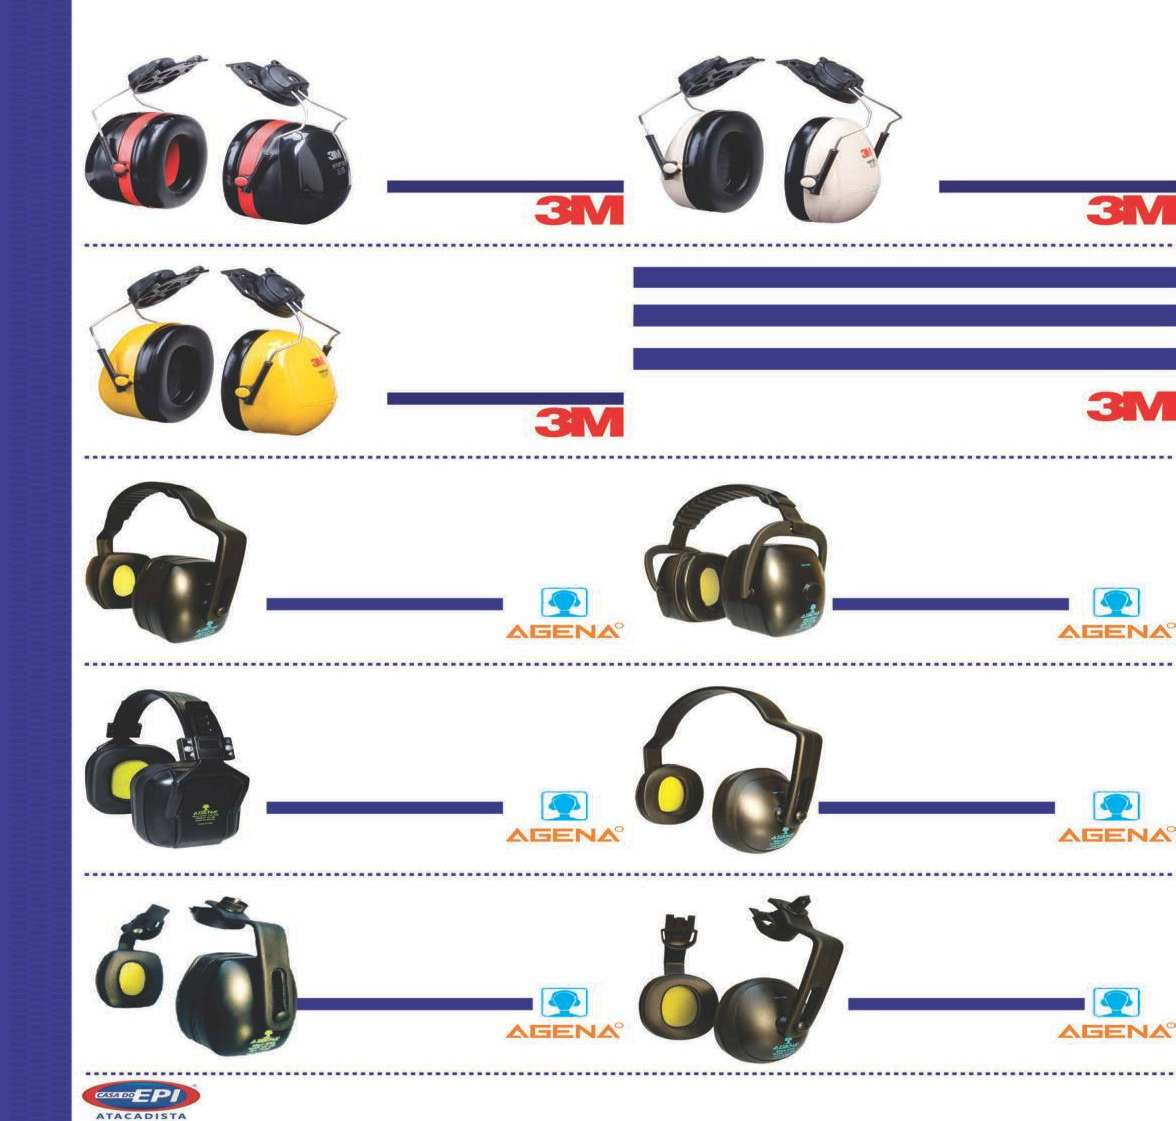 H10P3E - 24 db (Nsf) Haste acoplável no capacete, ideal para situações onde seja necessária a proteção auditiva e a cabeça. Fácil higienização. Compatível com outros EPIs.